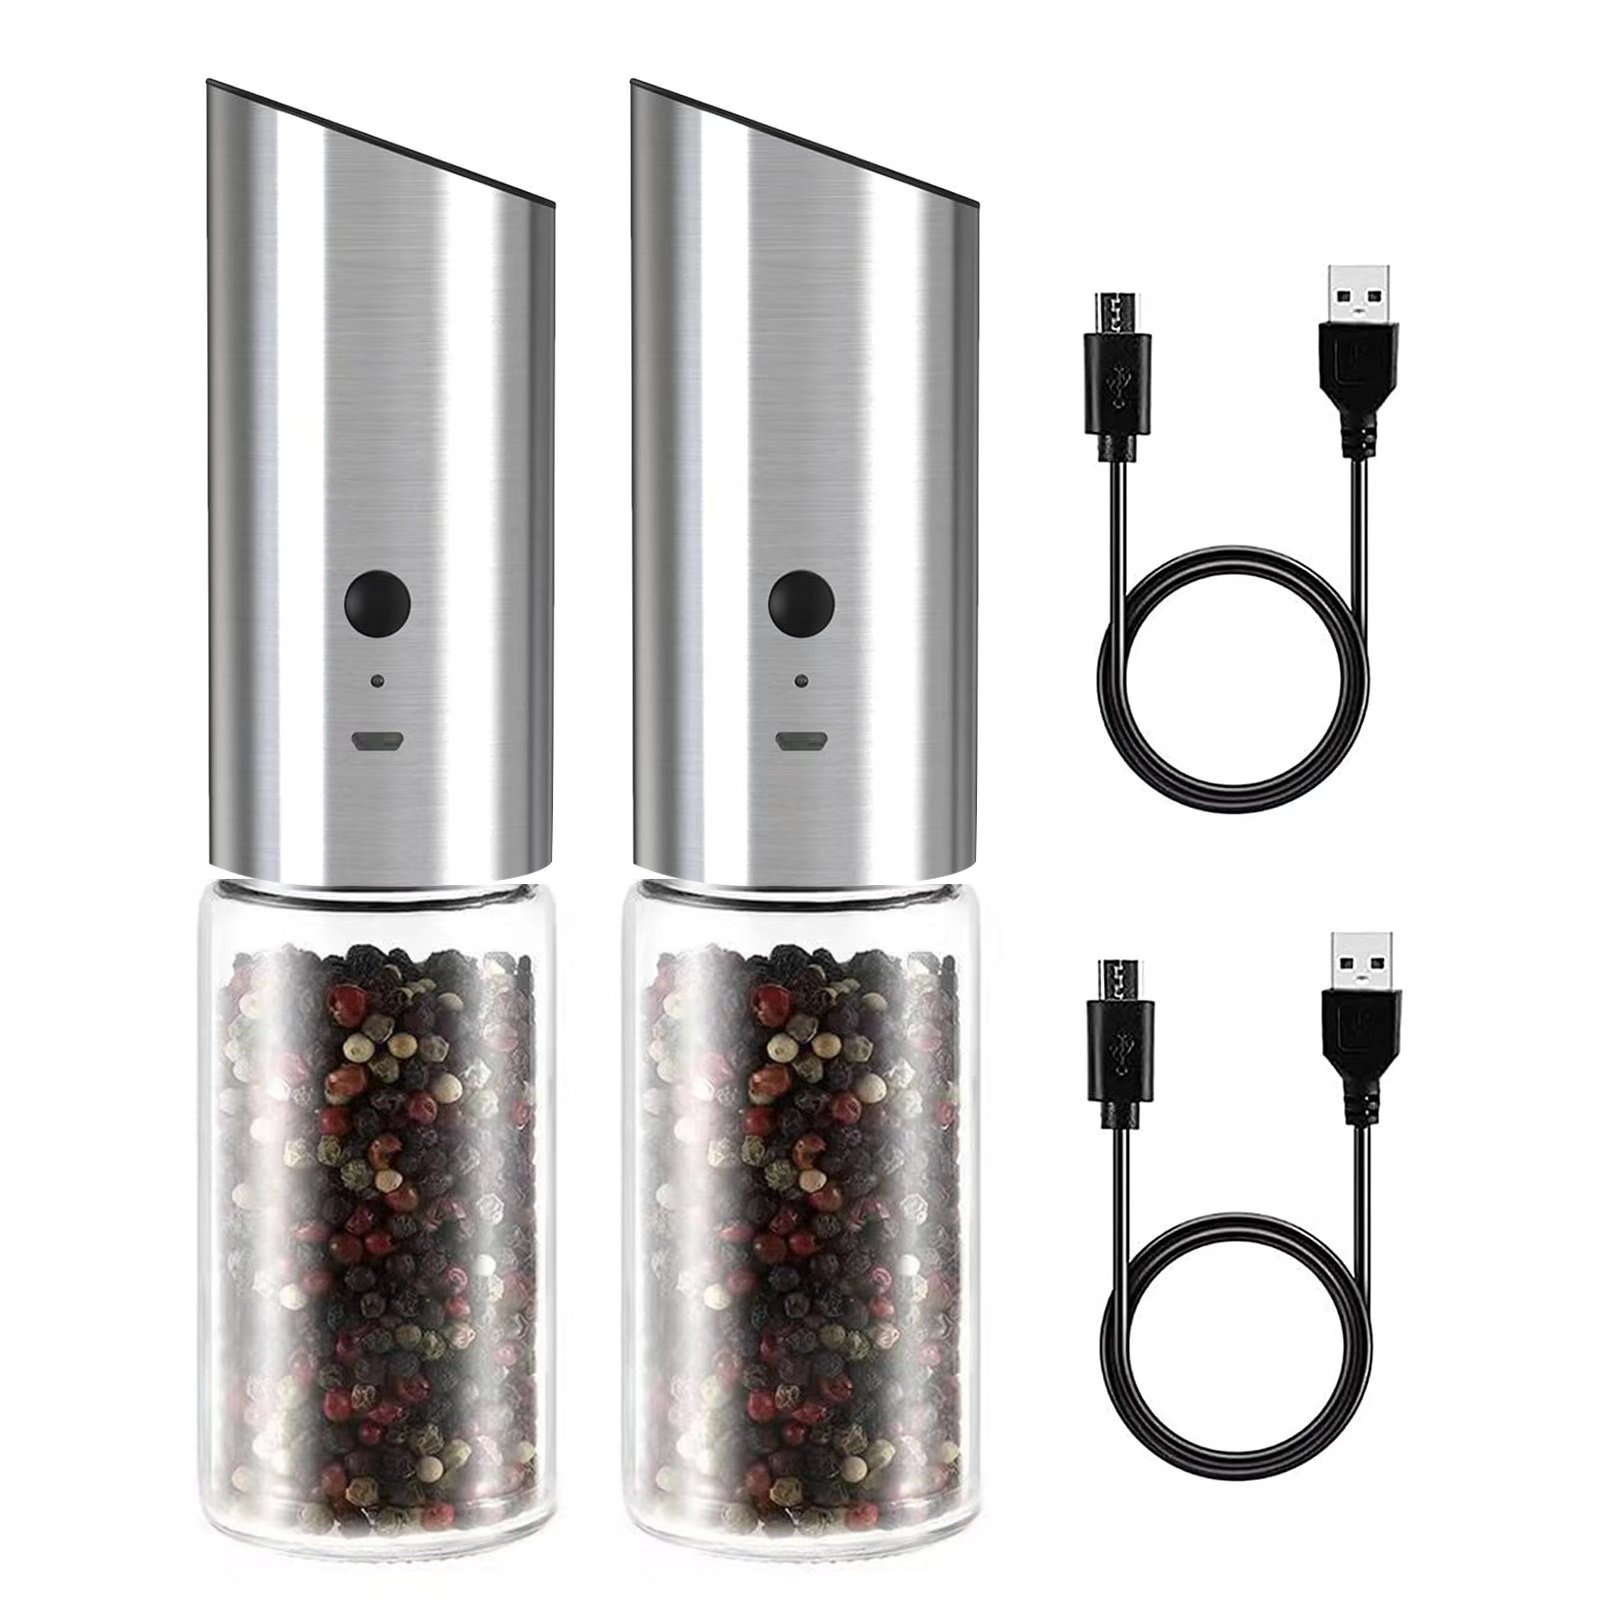 2 in 1 Electric Salt and Pepper Grinder Set Shaker USB